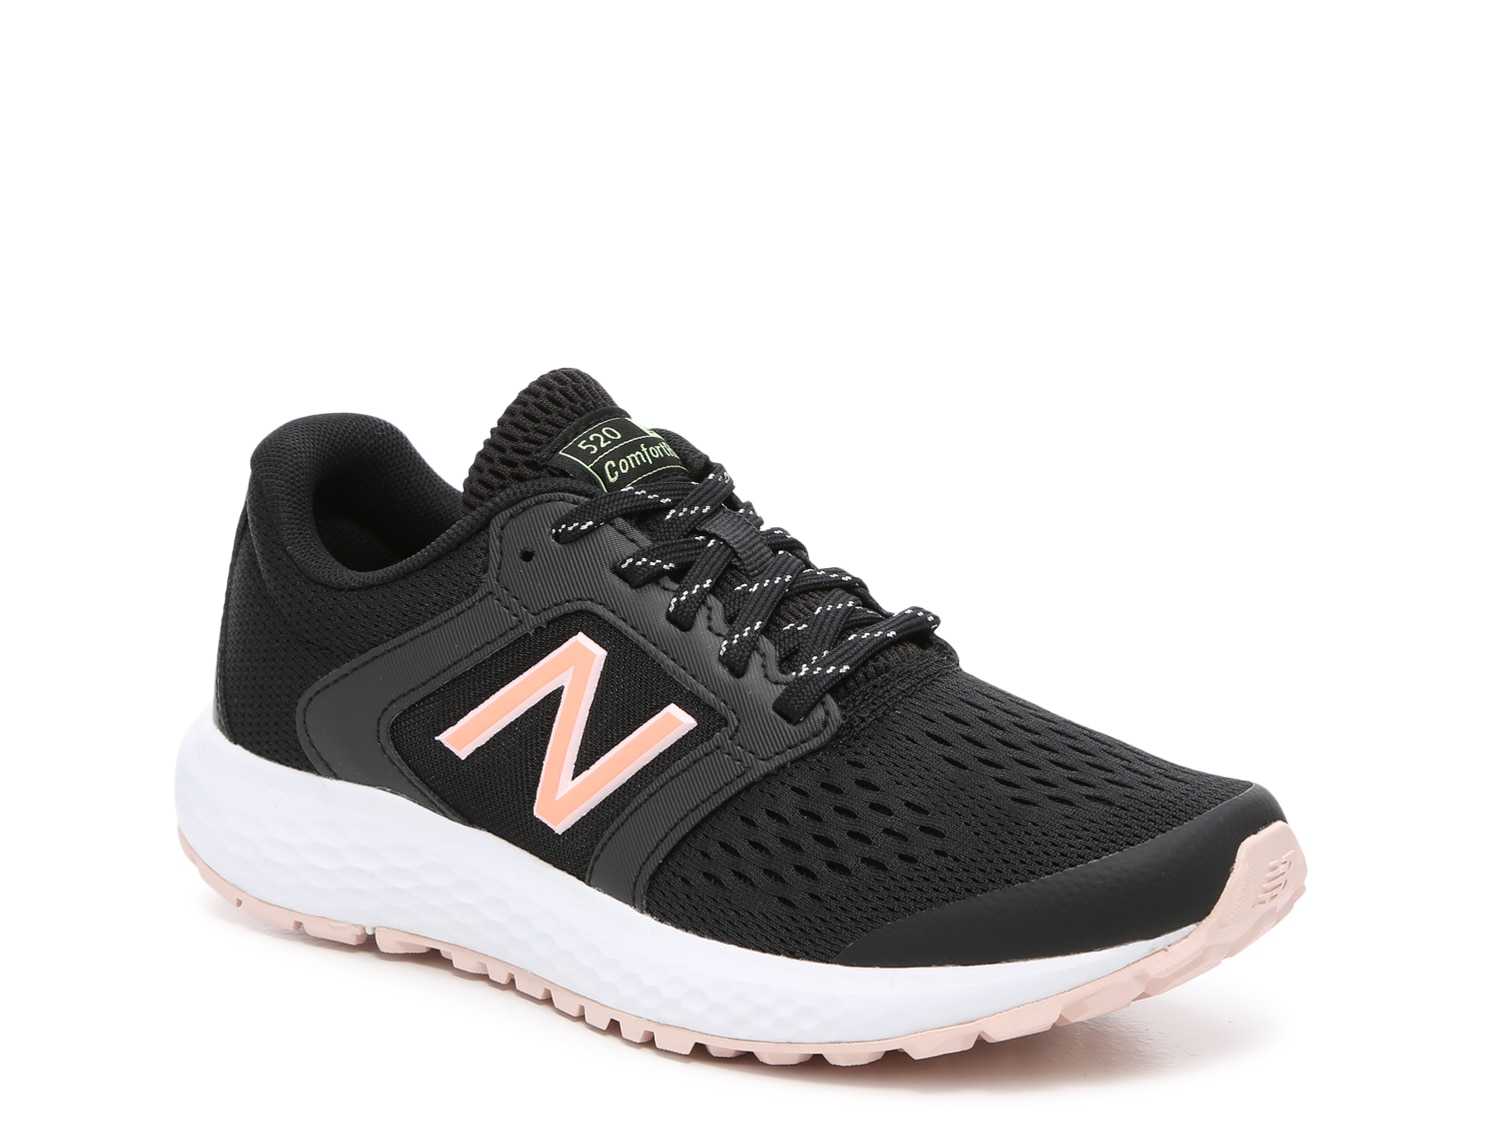 New Balance 520 Running Shoe - Women's 